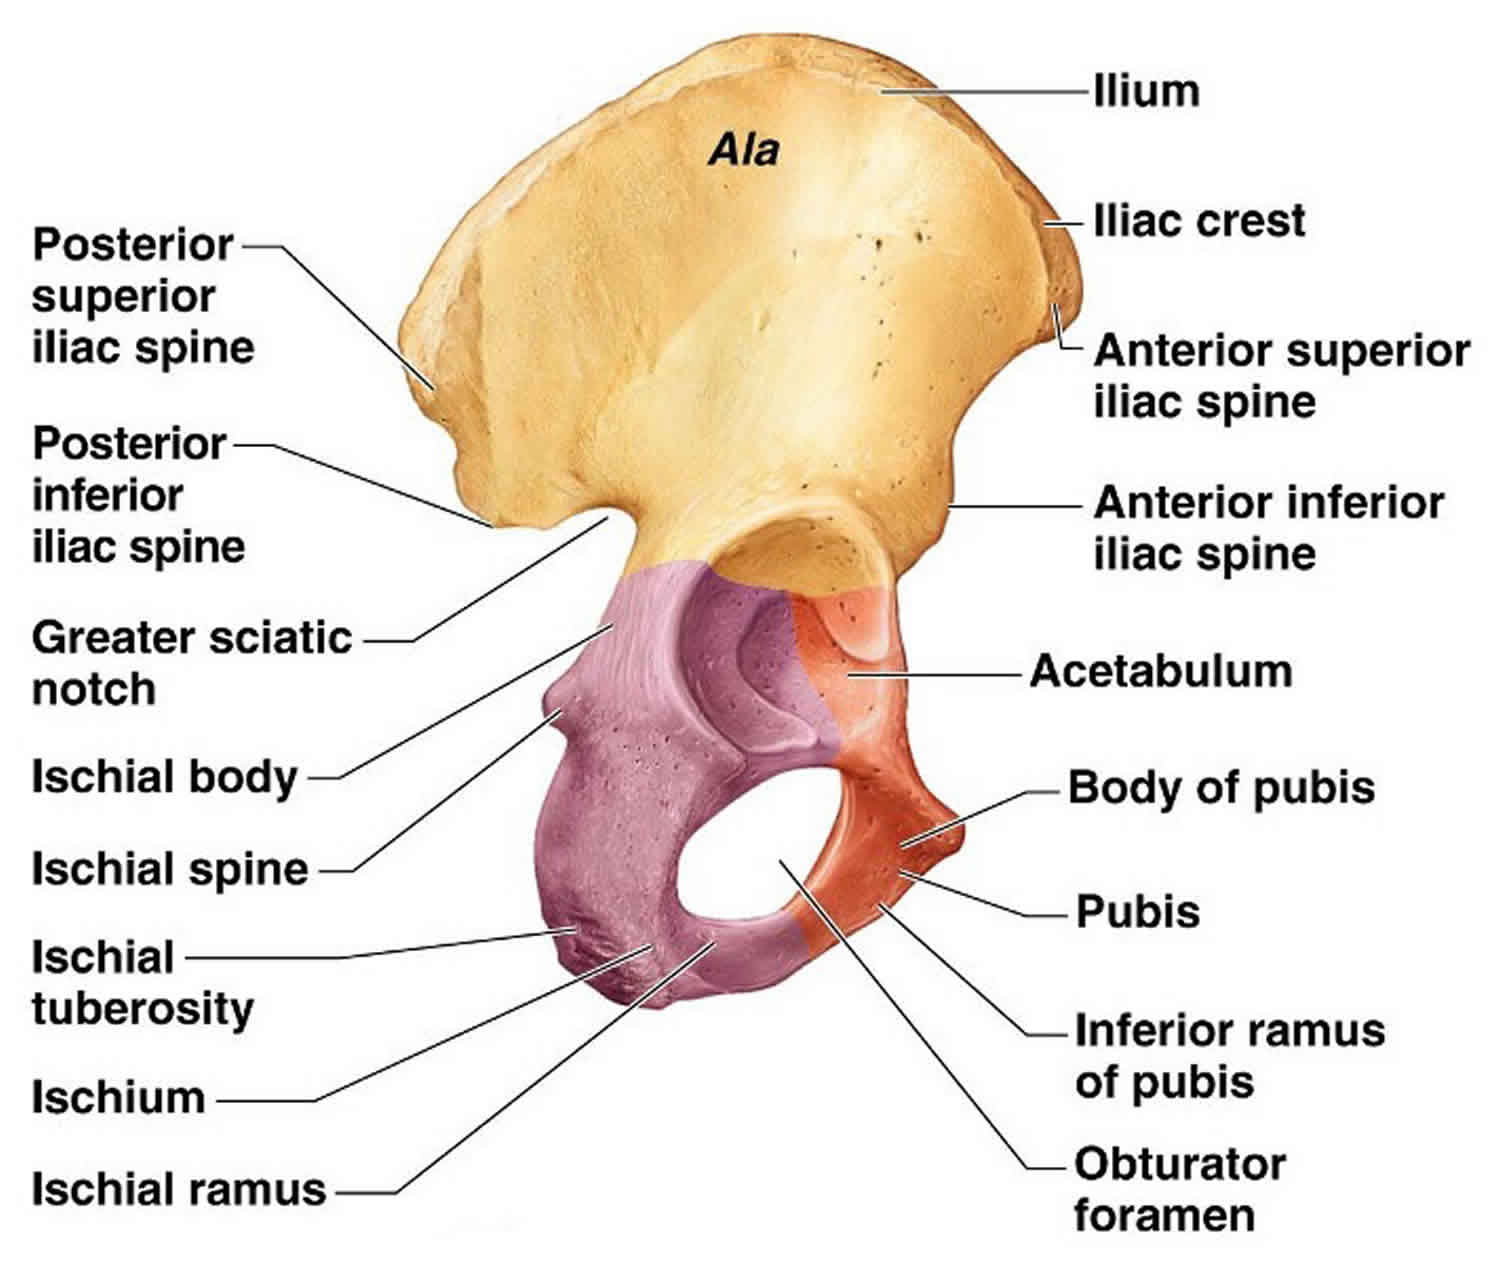 Alas перевод. Os pubis анатомия. Os Coxae анатомия. Os Coxae pelvis. Тазовая кость (os Coxae).